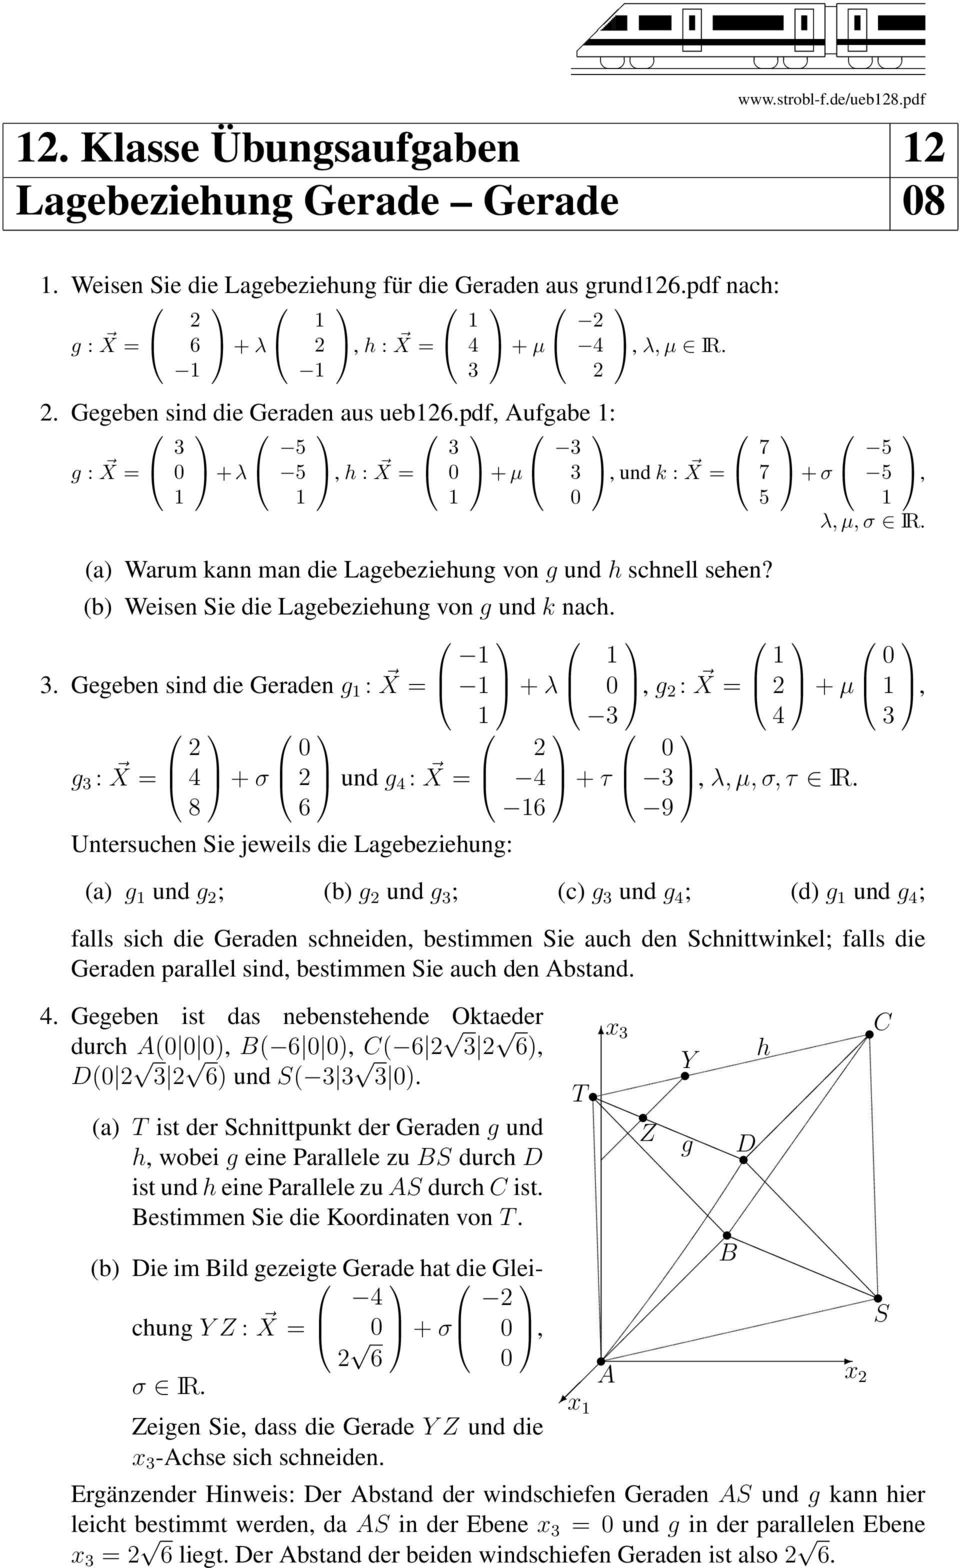 (b) Weisen Sie die Lagebeziehung von g und k nach.. Gegeben sind die Geraden g : X = + λ g : X = 8 + σ und g : X = Untersuchen Sie jeweils die Lagebeziehung: + τ, g : X = 7 7 5 + σ 5 5, λ, µ, σ IR.